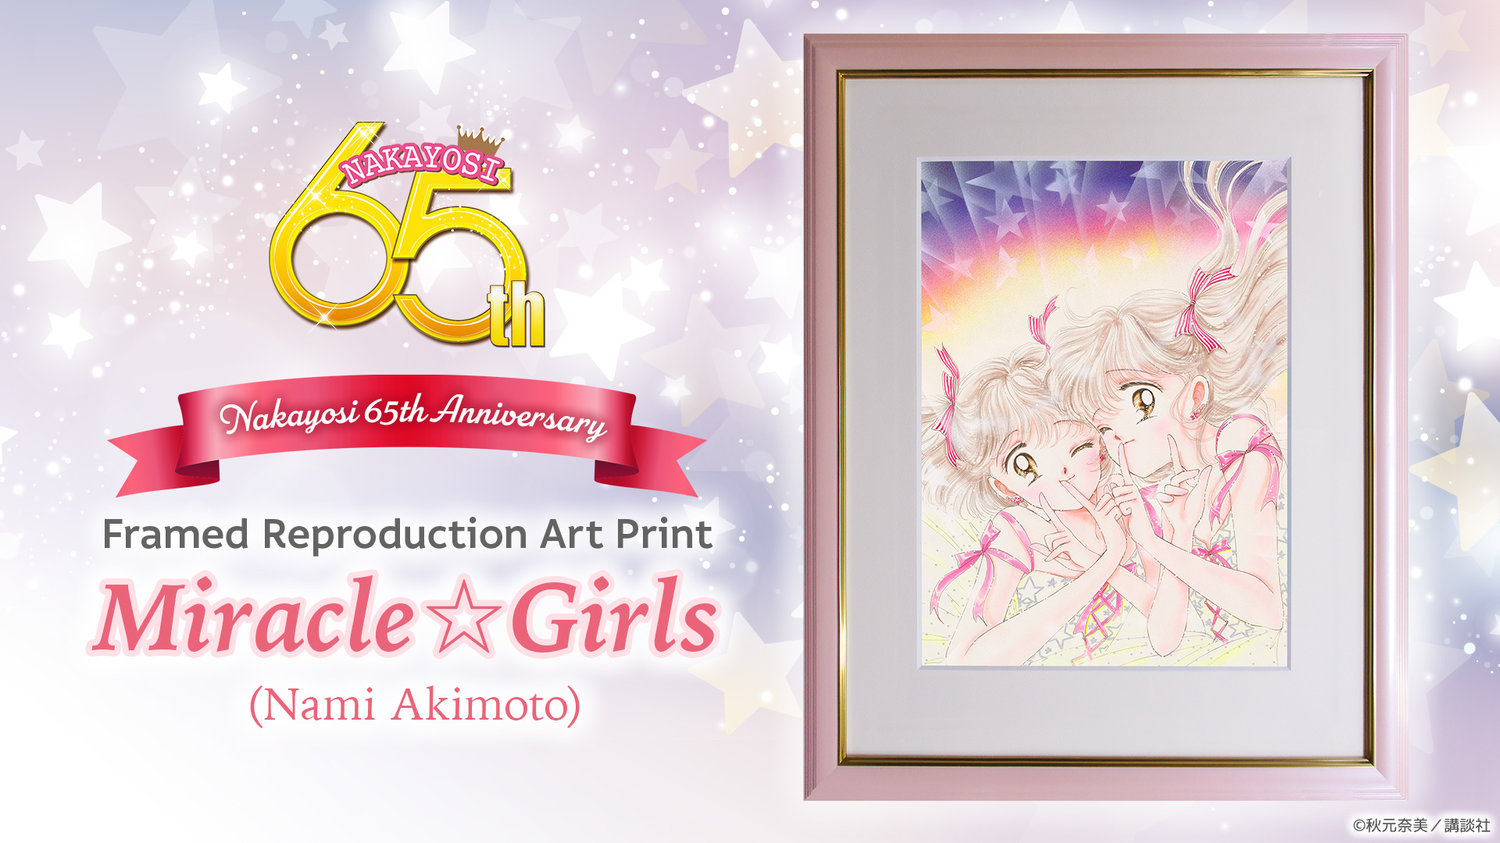 Nakayosi 65th Anniversary Framed Reproduction Art Print: Miracle☆Girls (Nami Akimoto)